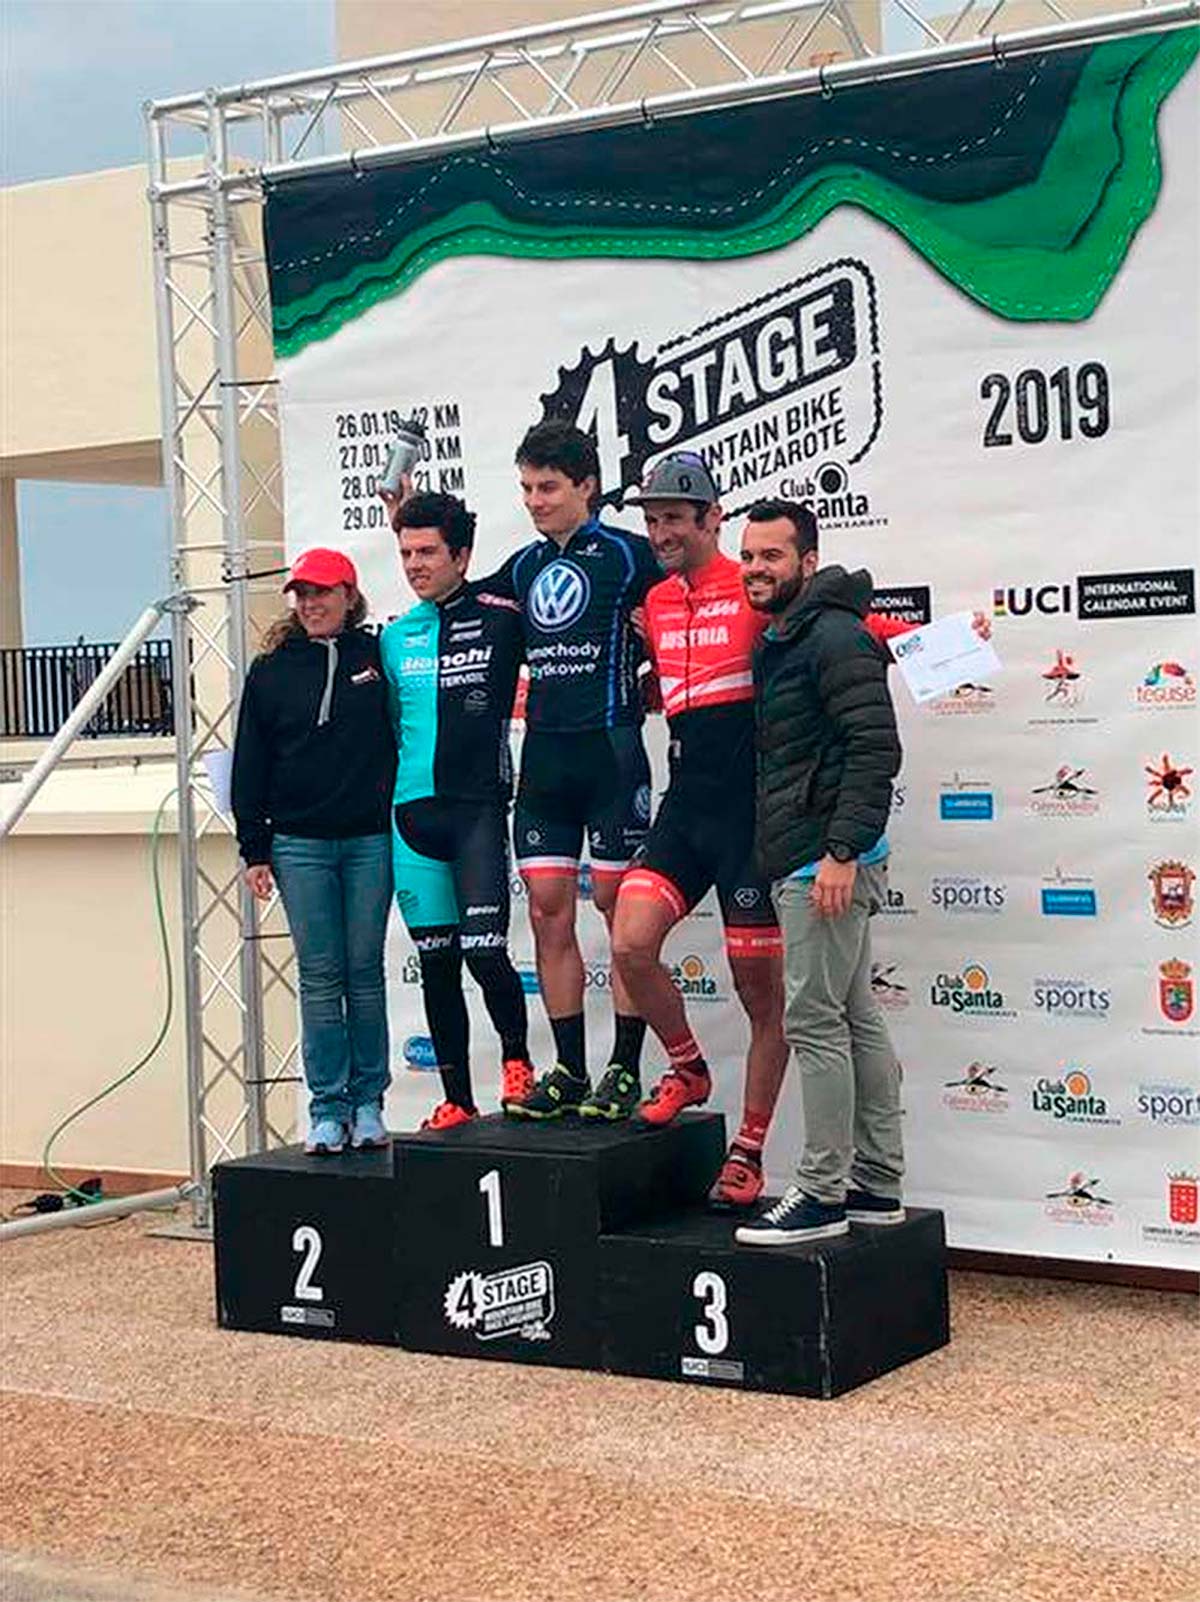 En TodoMountainBike: 4 Stage MTB Race Lanzarote 2019: Bartlomiej Wawak y Blaza Pintaric se proclaman campeones